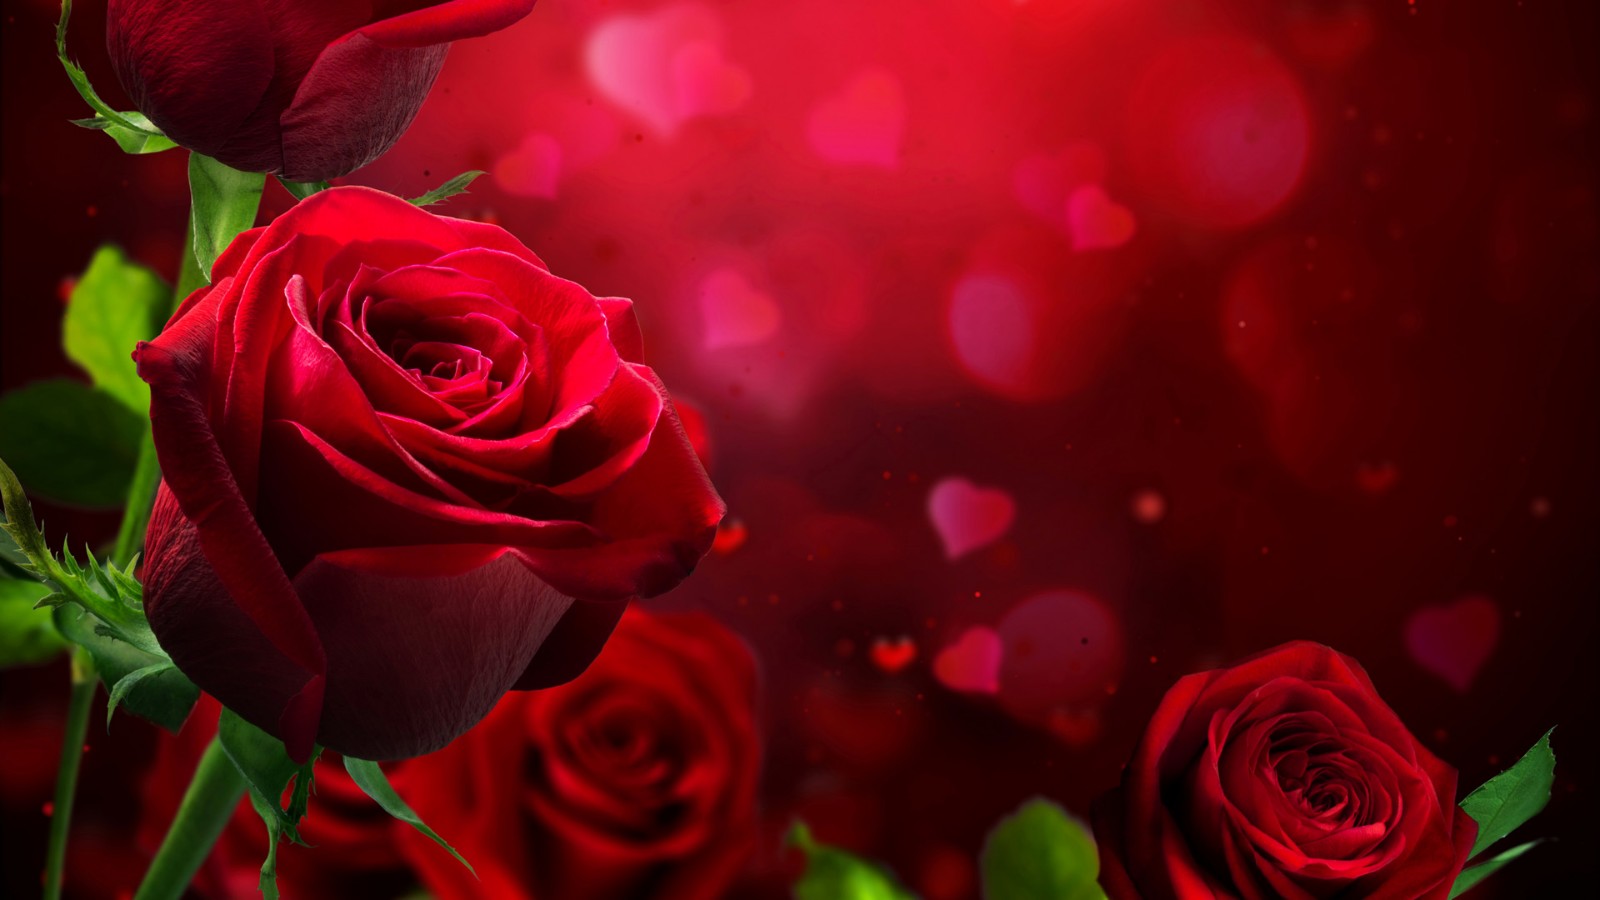 漂亮玫瑰花的图片  高清艳丽玫瑰图片大全(4)